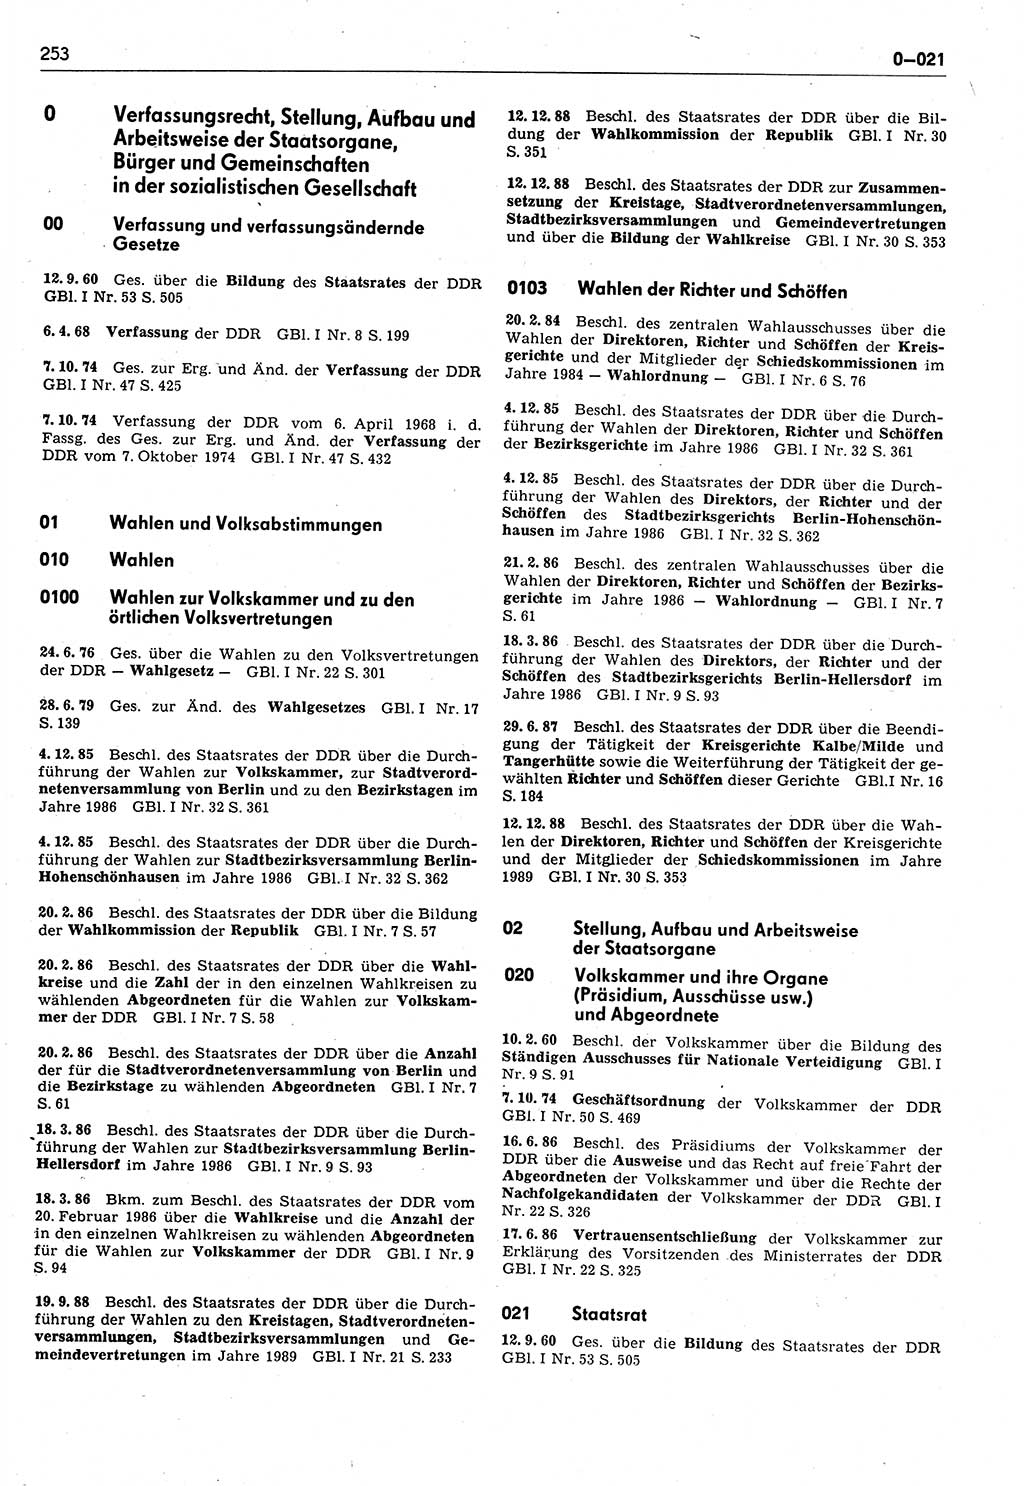 Das geltende Recht der Deutschen Demokratischen Republik (DDR) 1949-1988, Seite 253 (Gelt. R. DDR 1949-1988, S. 253)